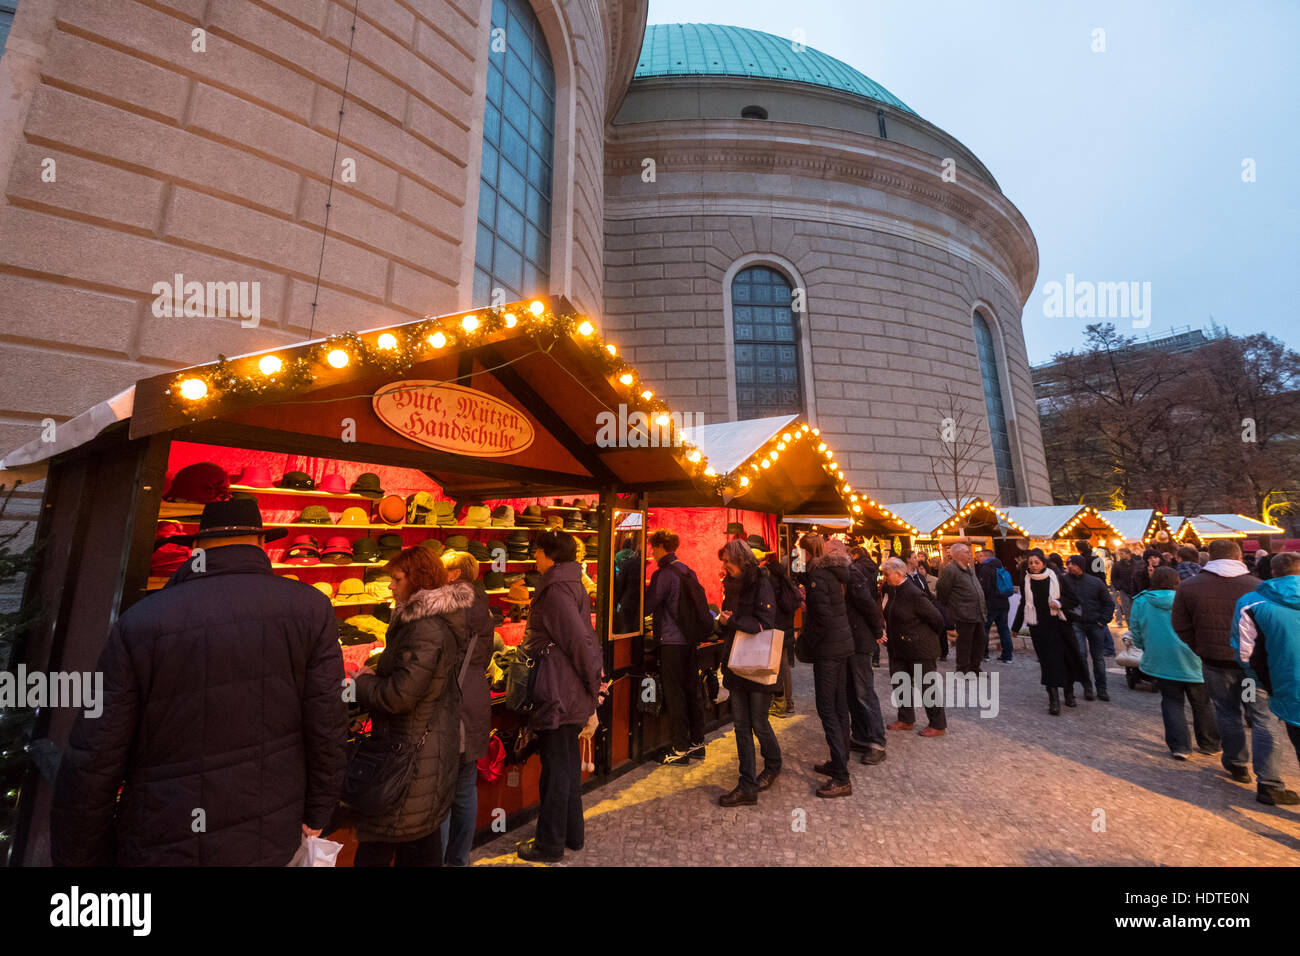 Vista notturna del tradizionale Mercatino di Natale a santa Edvige la cattedrale di notte nel quartiere Mitte Berlino Germania 2016 Foto Stock